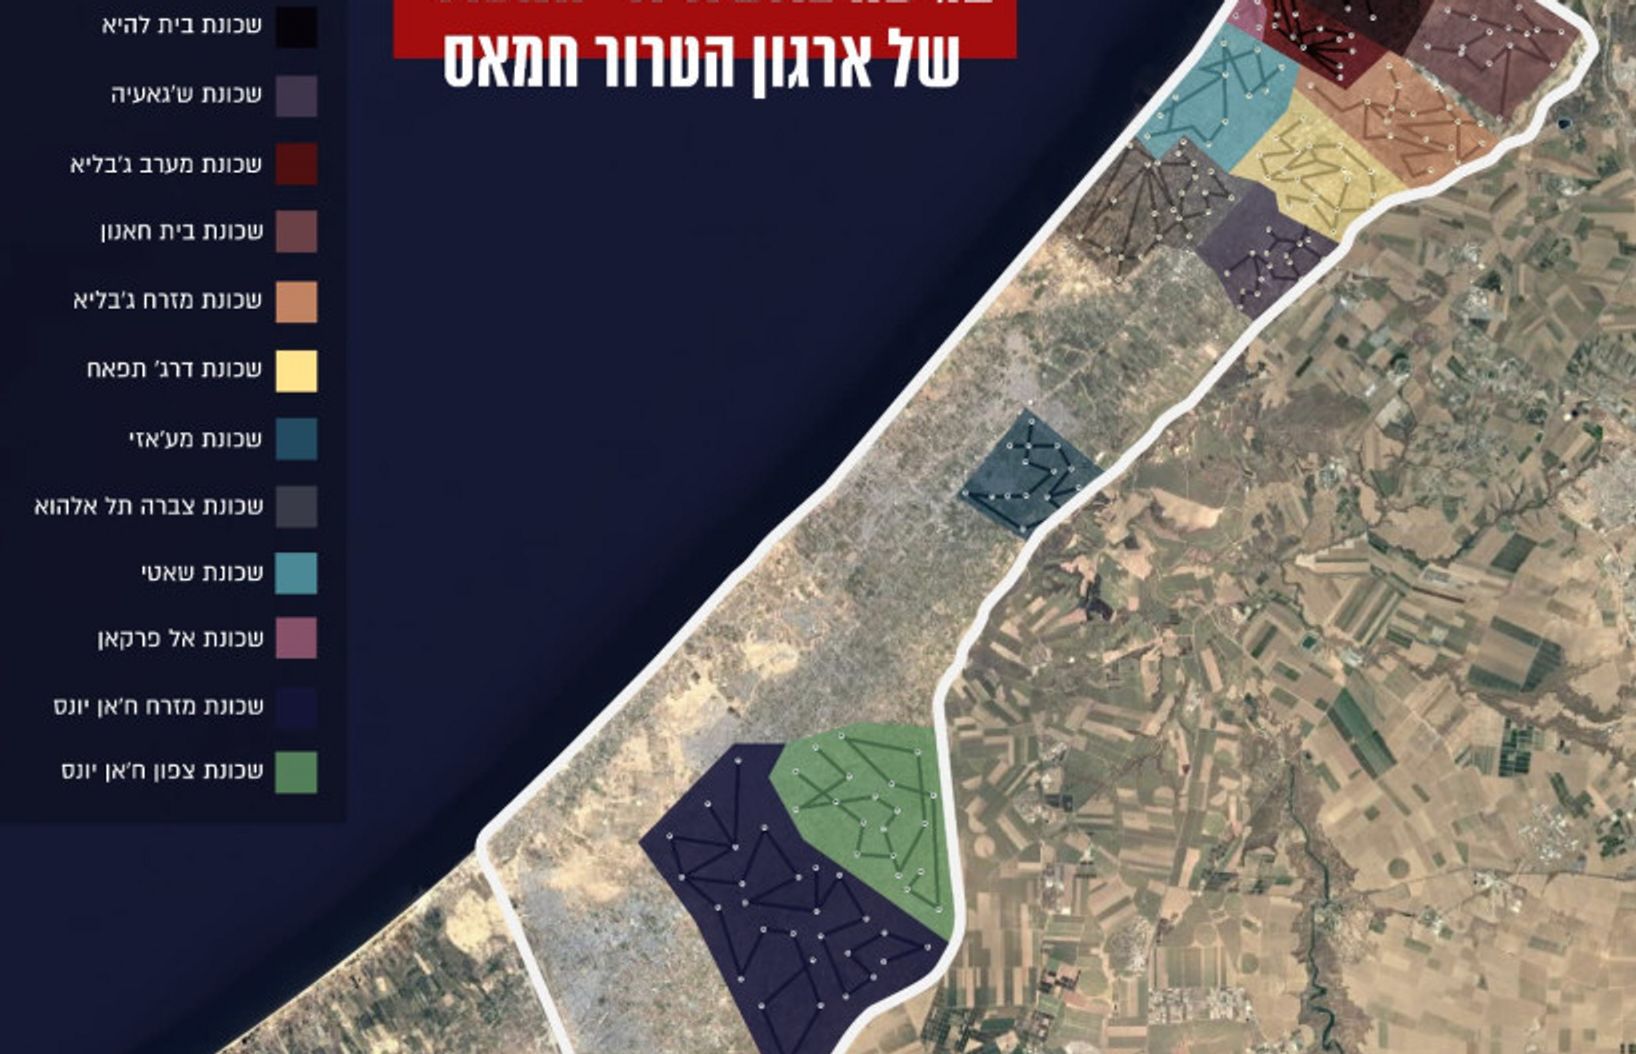 Схема «метро Газы» в 2021 году в представлении ЦАХАЛ